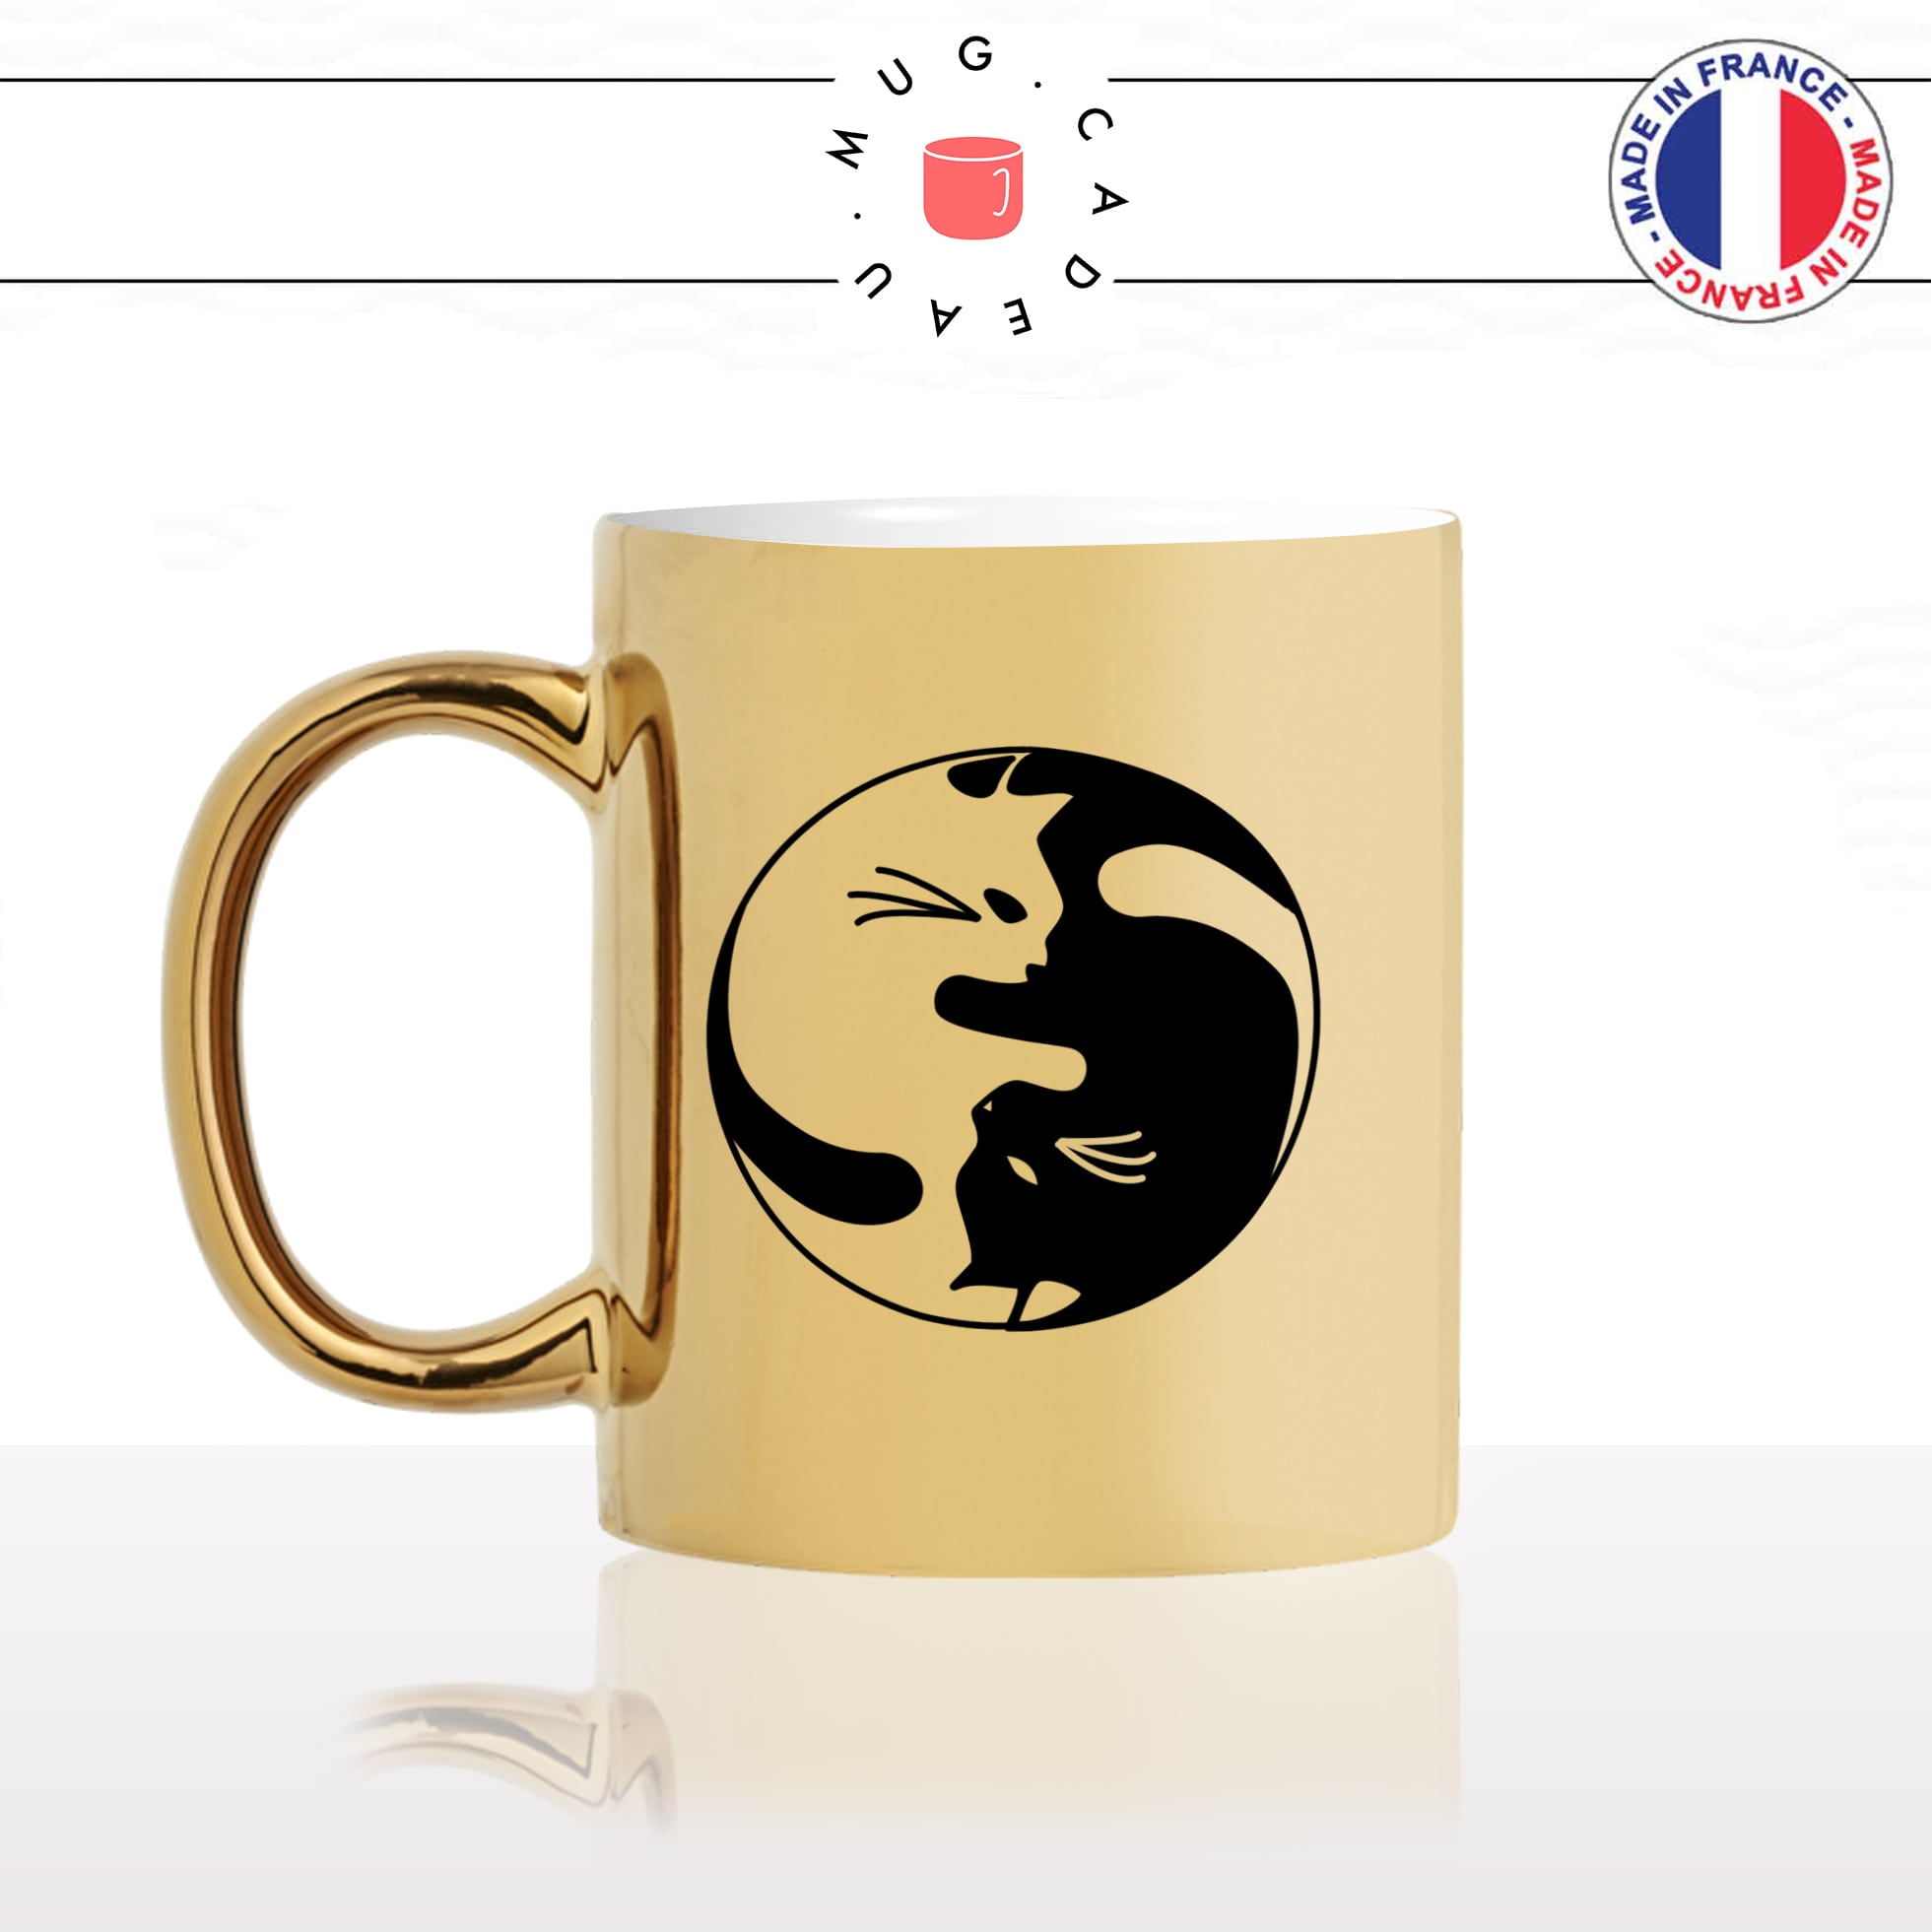 mug-tasse-or-doré-chats-yin-yang-bouddha-japon-chine-mignon-animal-chaton-noir-fun-café-thé-idée-cadeau-original-personnalisé-gold-min